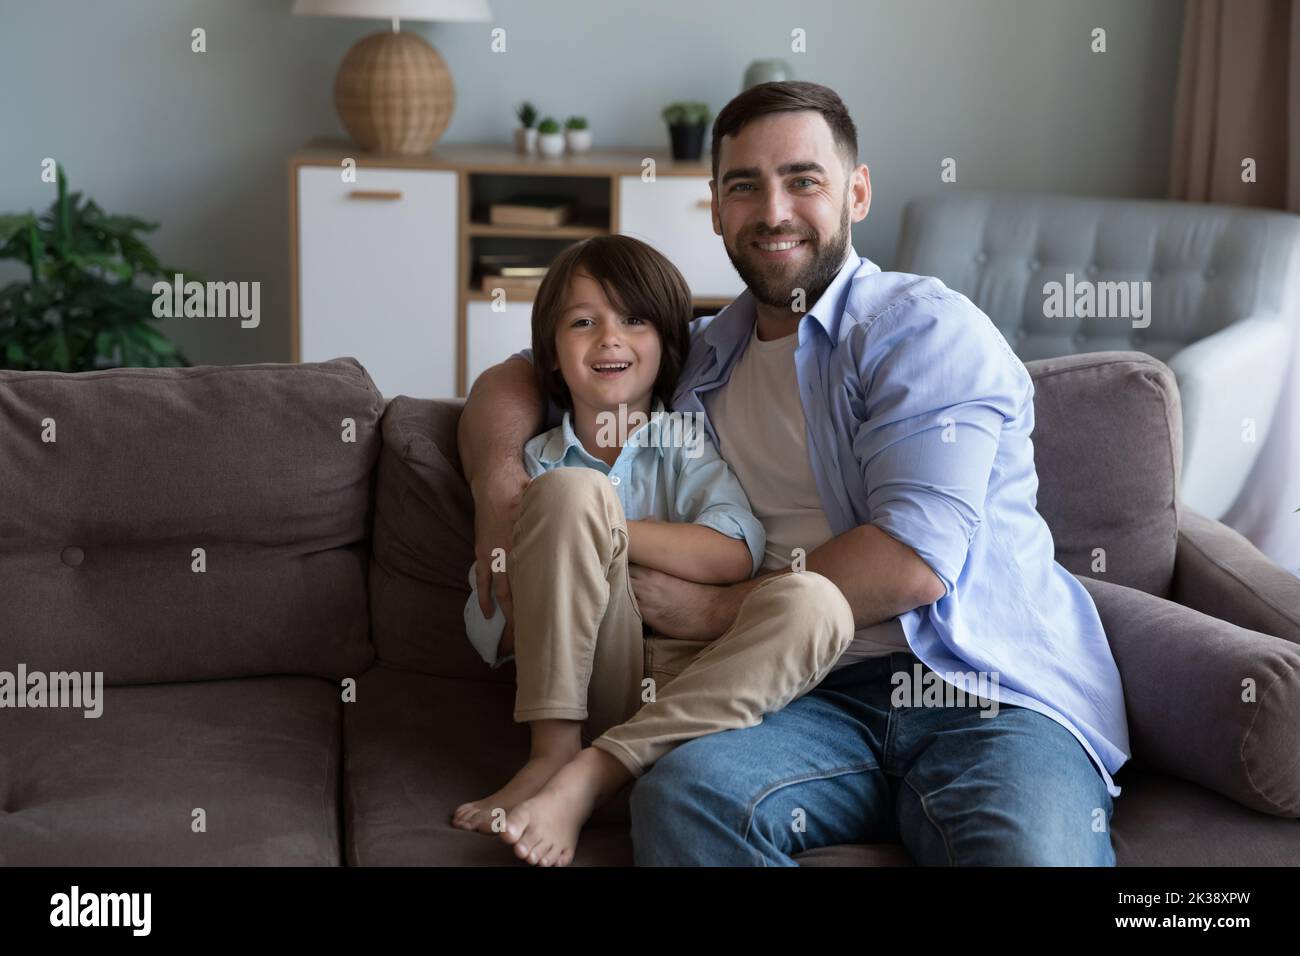 Papa heureux et petit garçon gai assis sur un canapé Banque D'Images